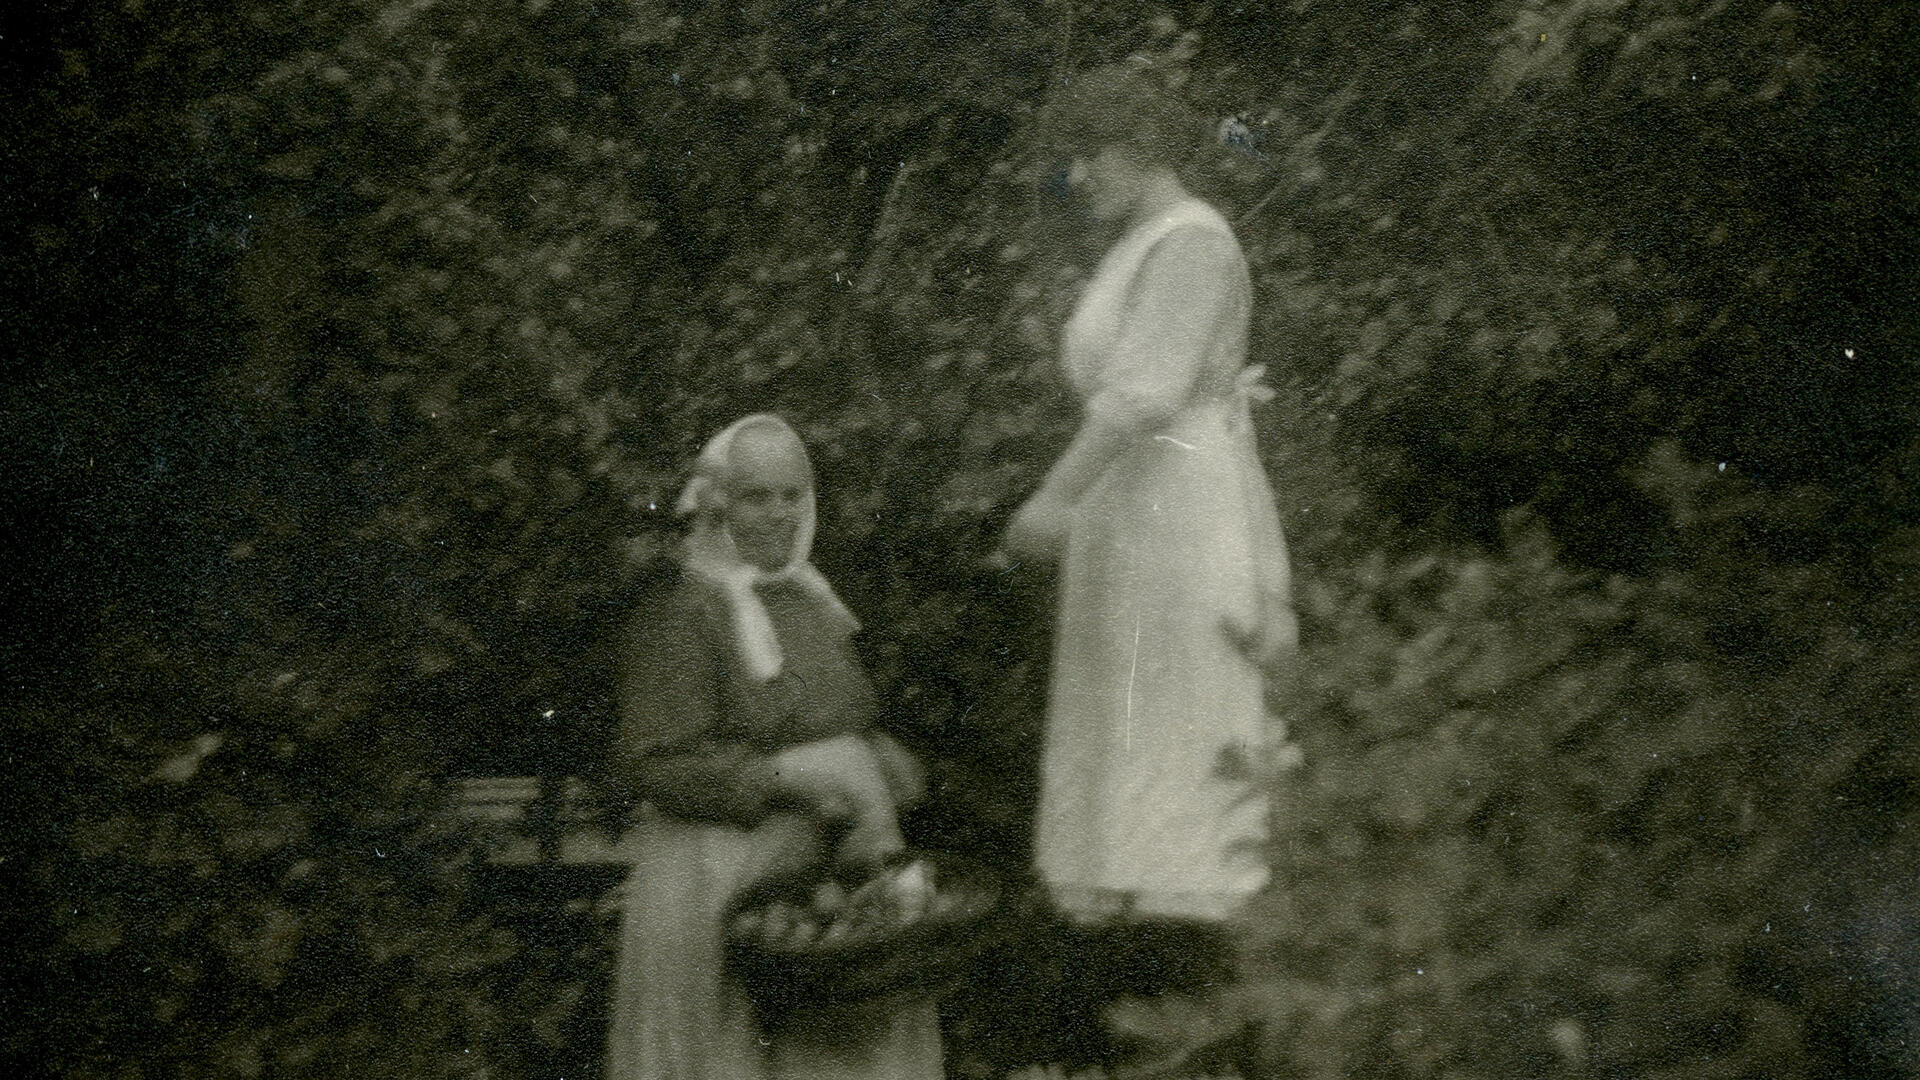 mustavalkokuvassa kaksi naista, toinen seisoo jakkaralla ja omenoita vanhemmalle naiselle, joka seisoo maassa omenakori kädessään